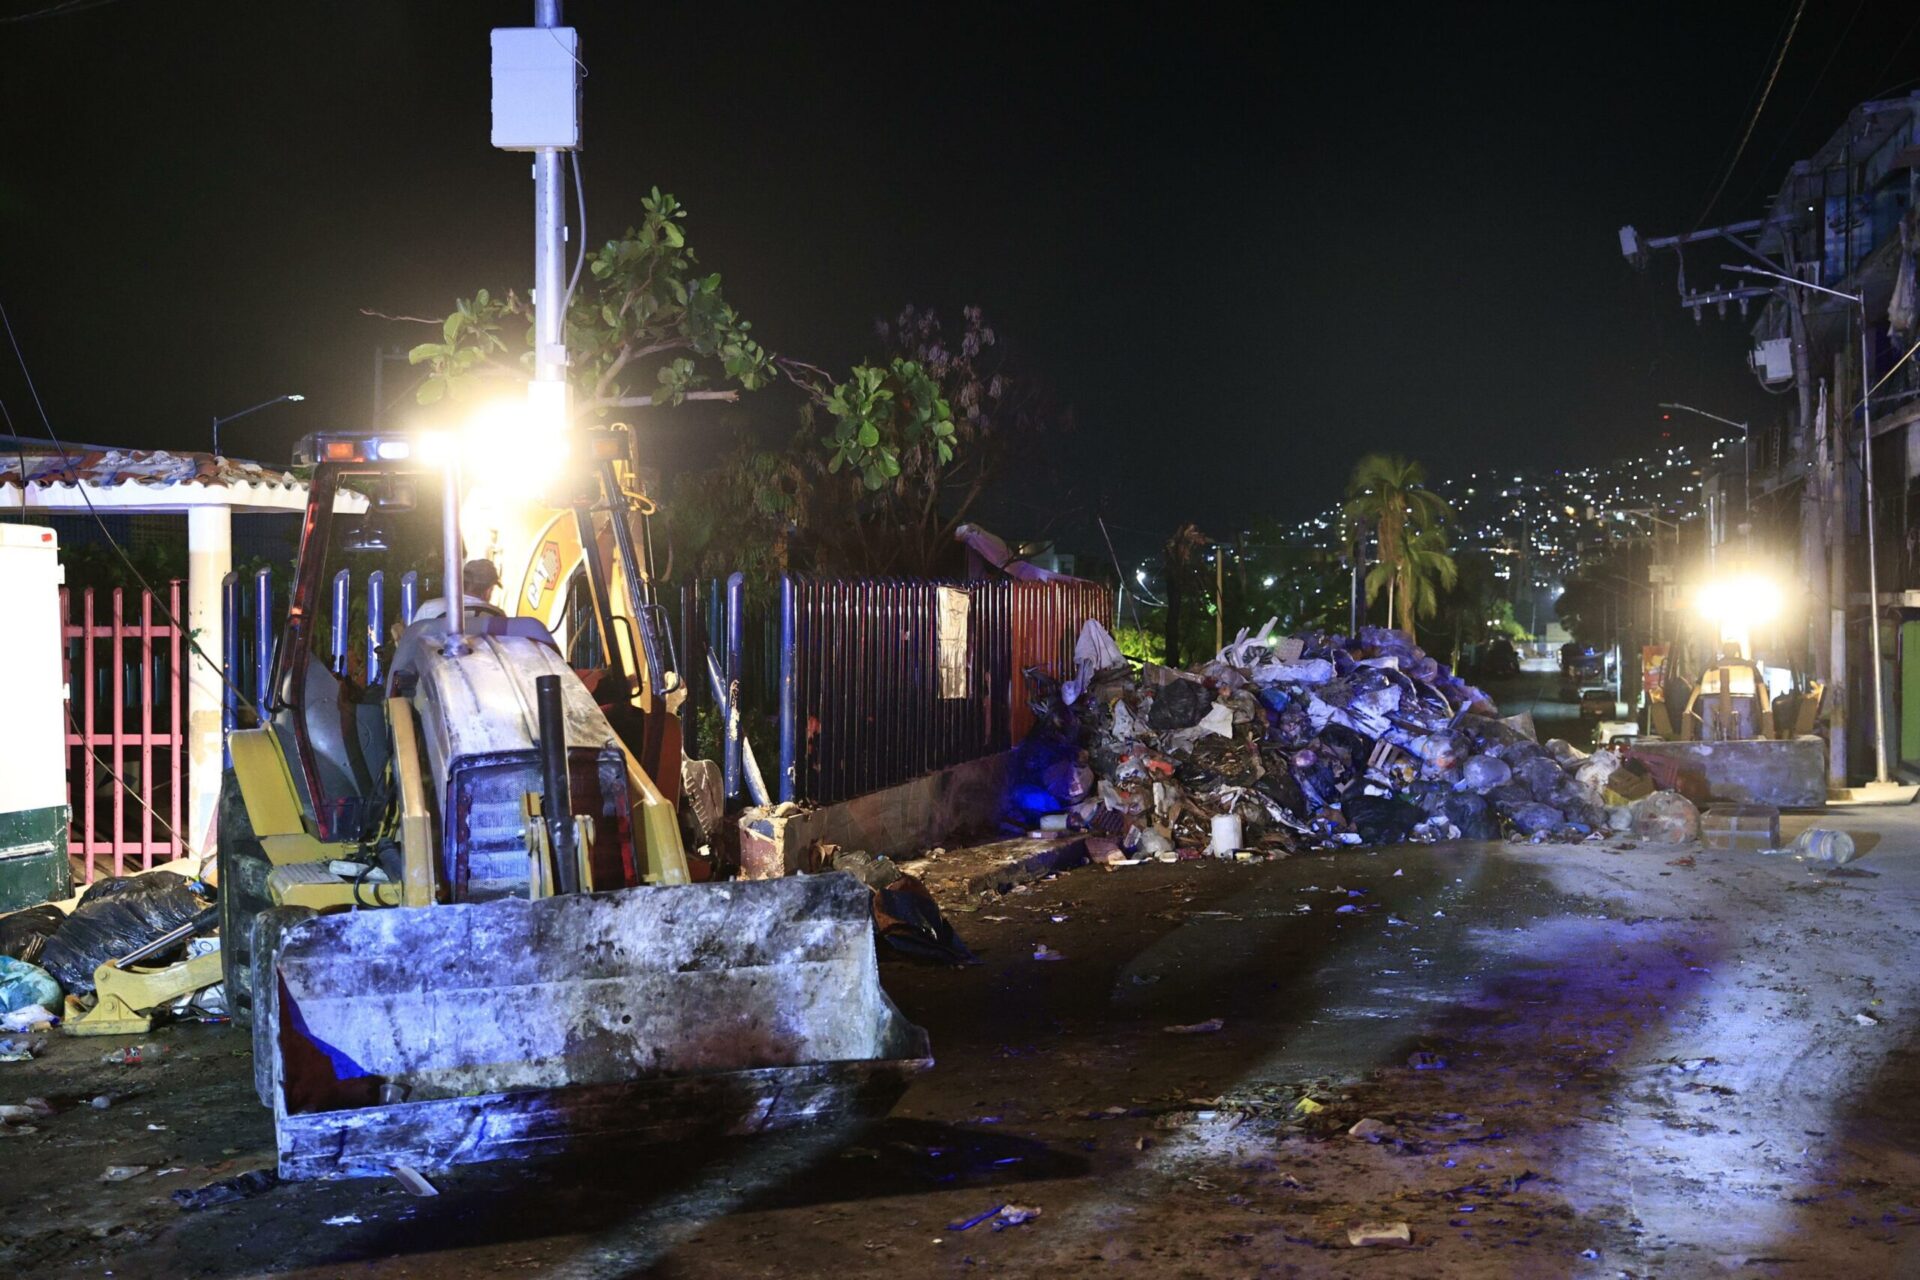 Agilizan recolección de residuos en Acapulco con jornada de limpieza nocturna